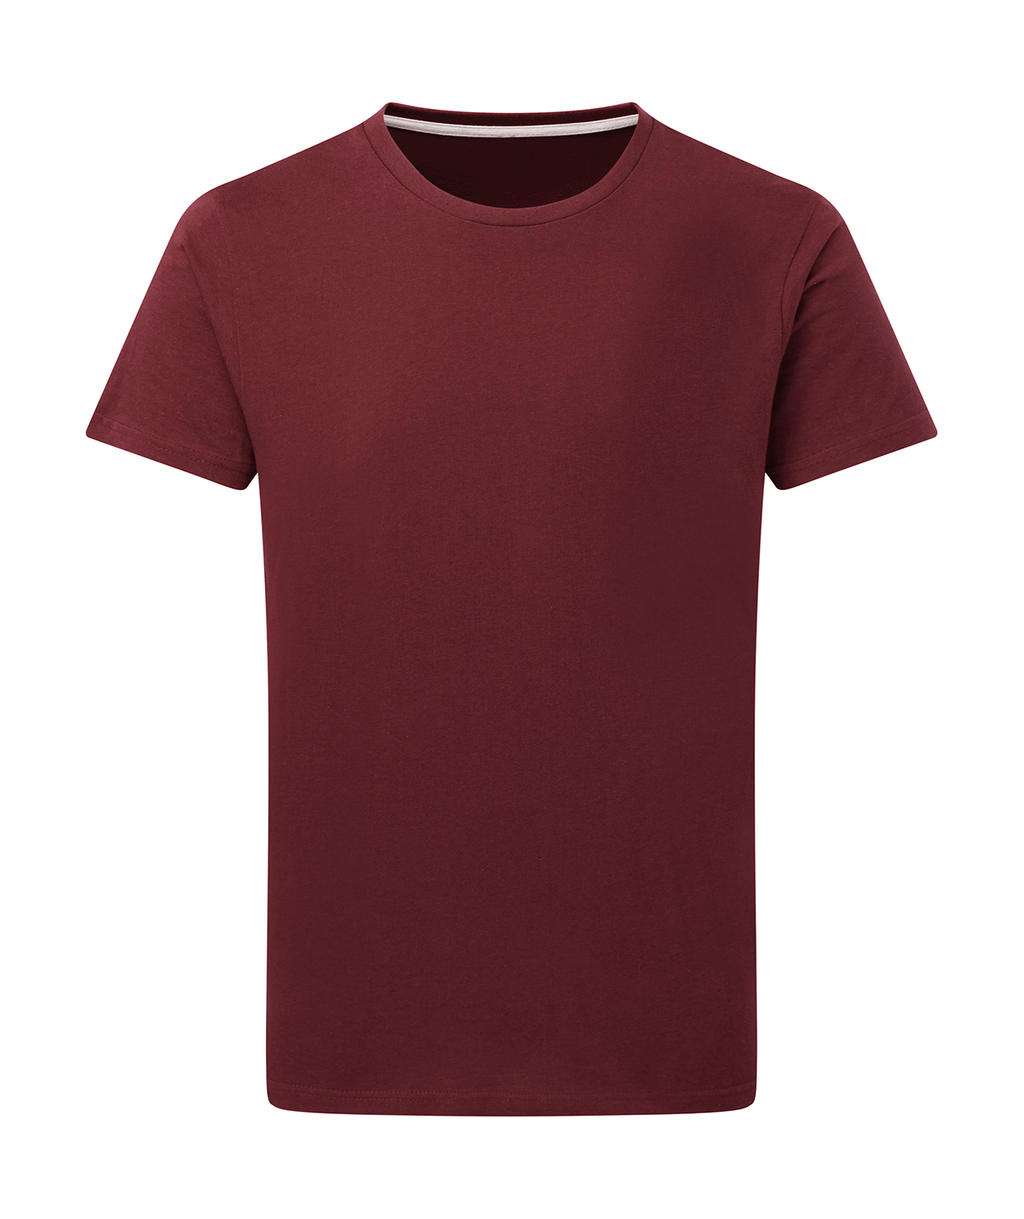 Dokonale potlačiteľné tričko bez štítku - burgundy